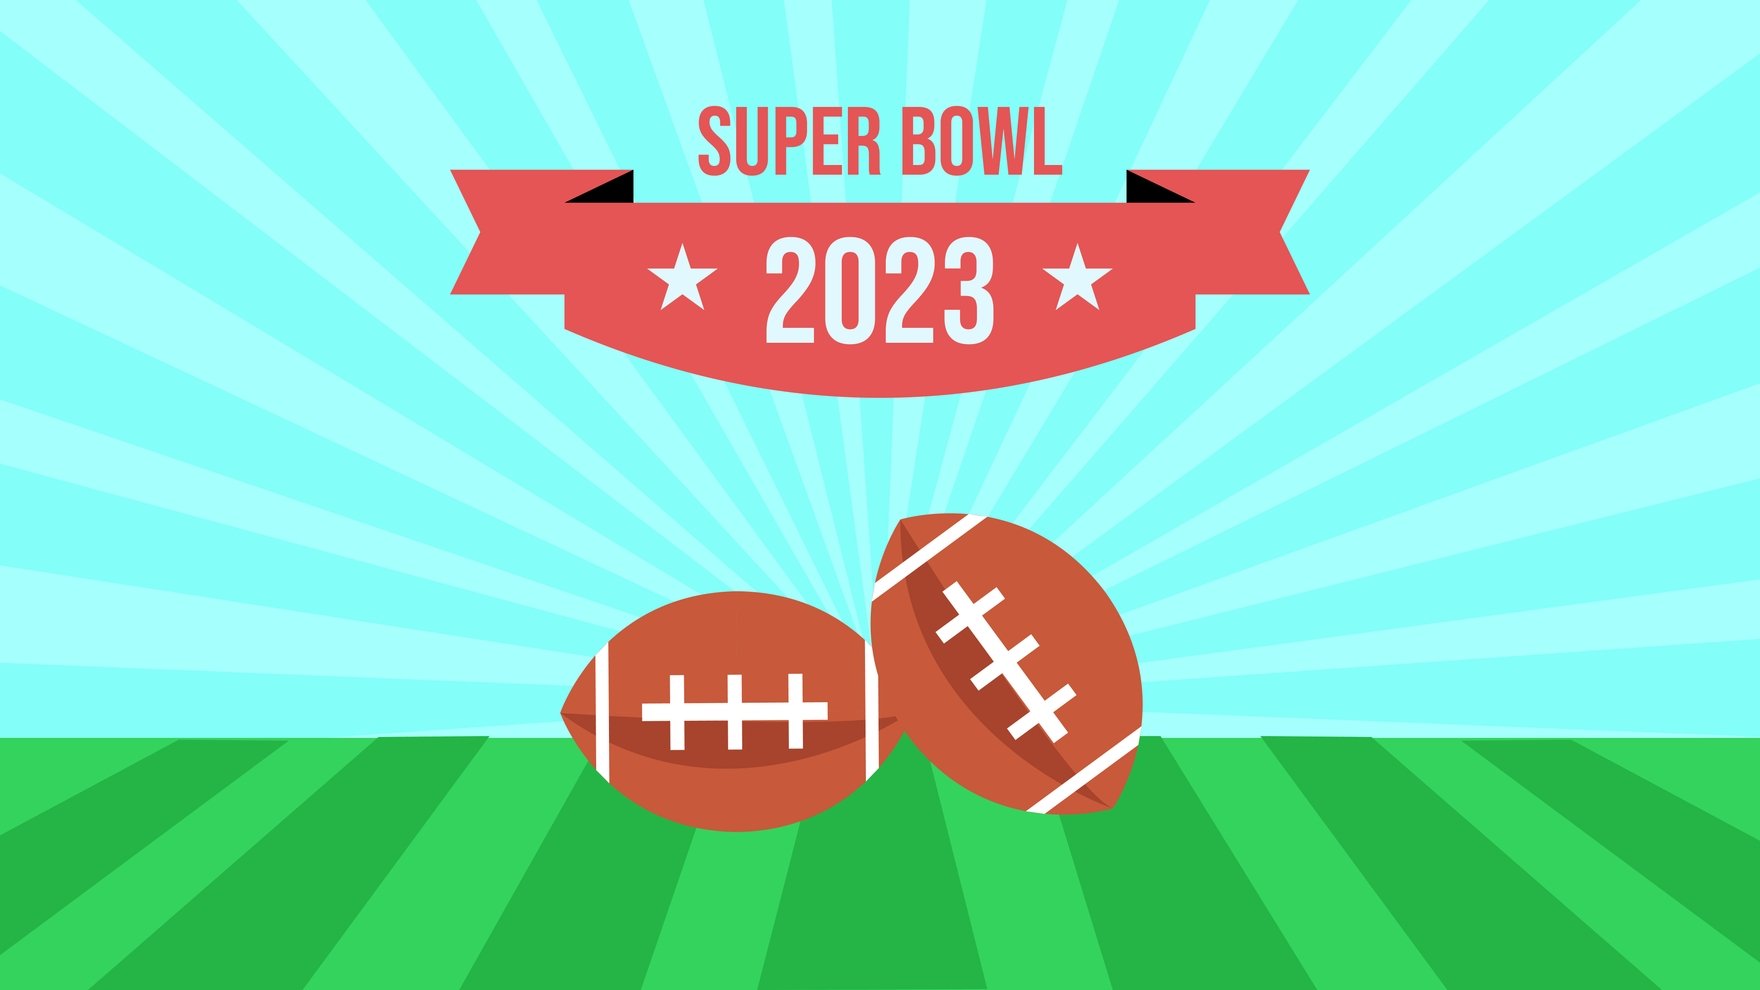 Super Bowl 2023 Vector Background in PDF, Illustrator, PSD, EPS, SVG, JPG, PNG